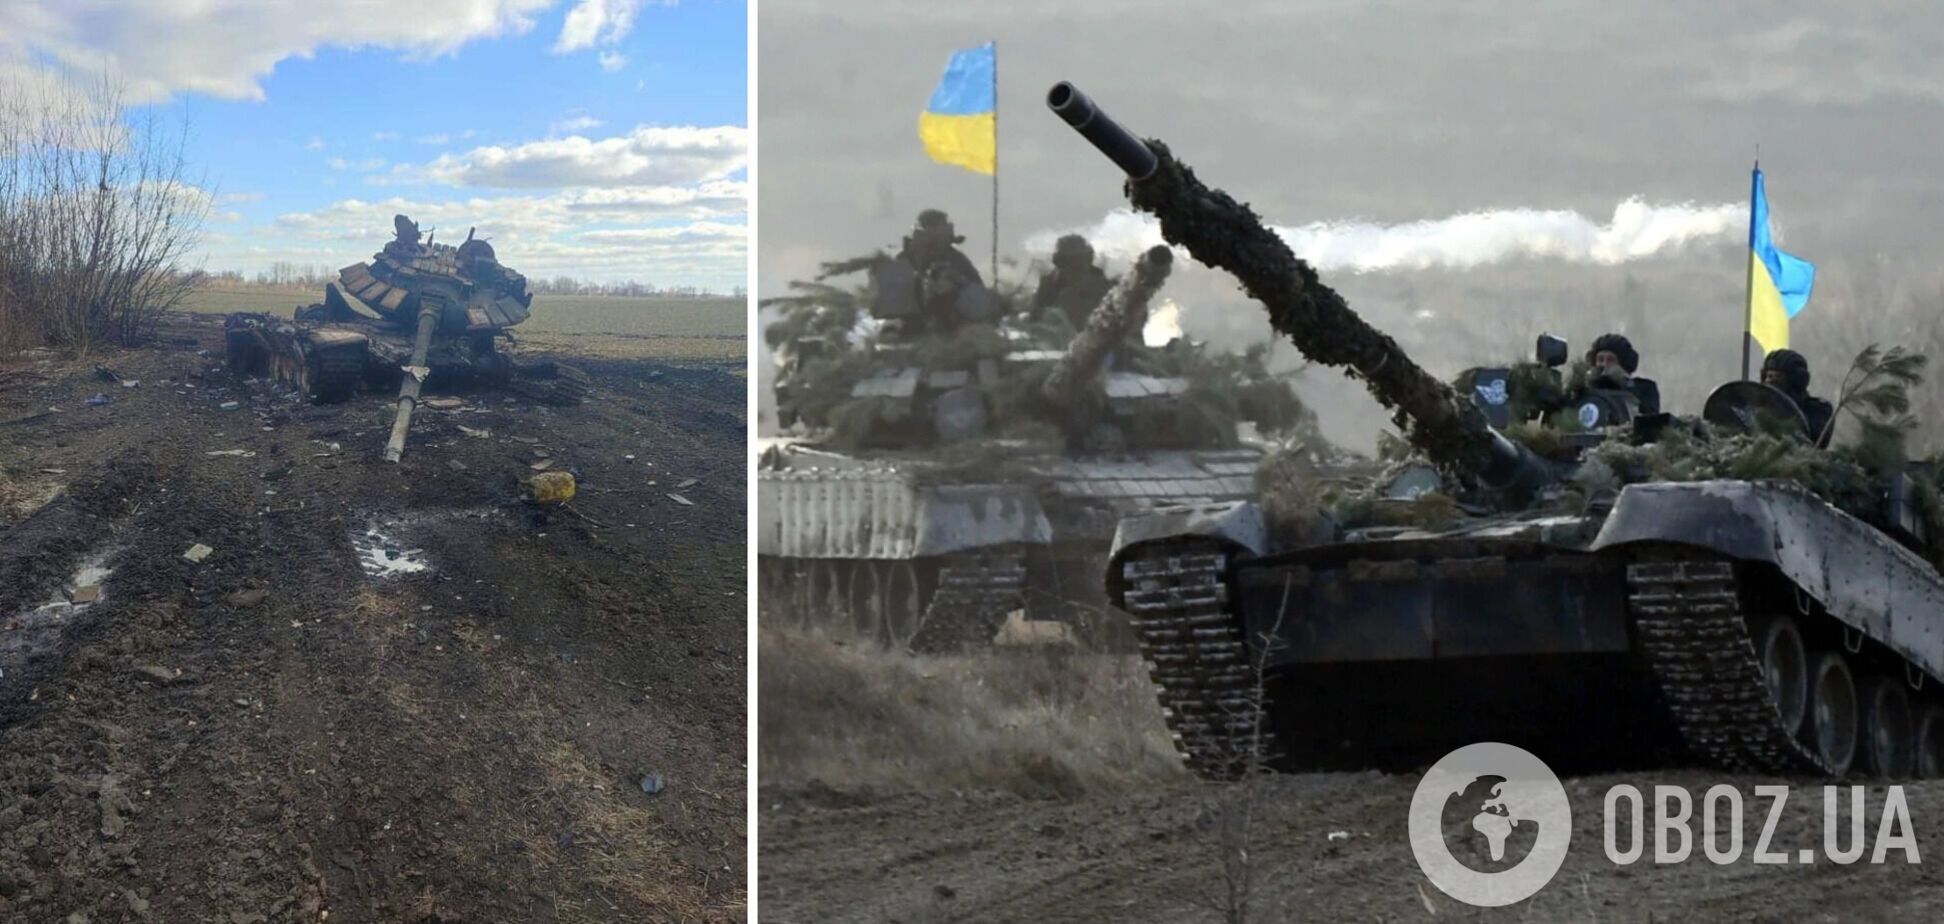 Потери России в войне против Украины составляют 14,4 тыс. человек, 466 танков и 115 вертолетов